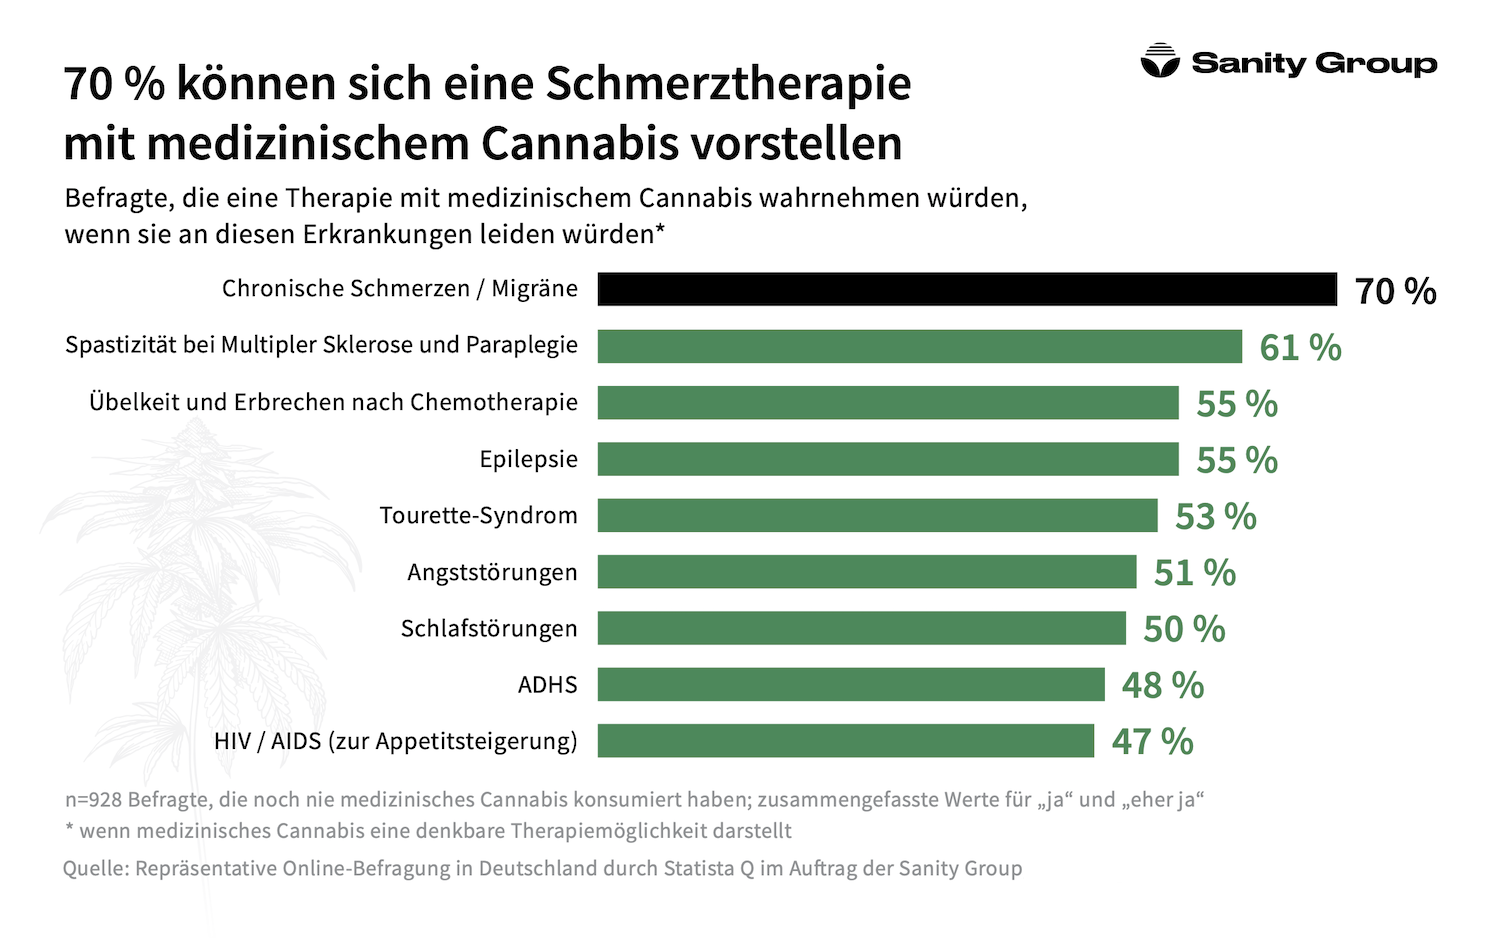 Sanity Group Statista-Umfrage zu medizinischem Cannabis in 2021/2022 – Quelle: Sanity Group (c)